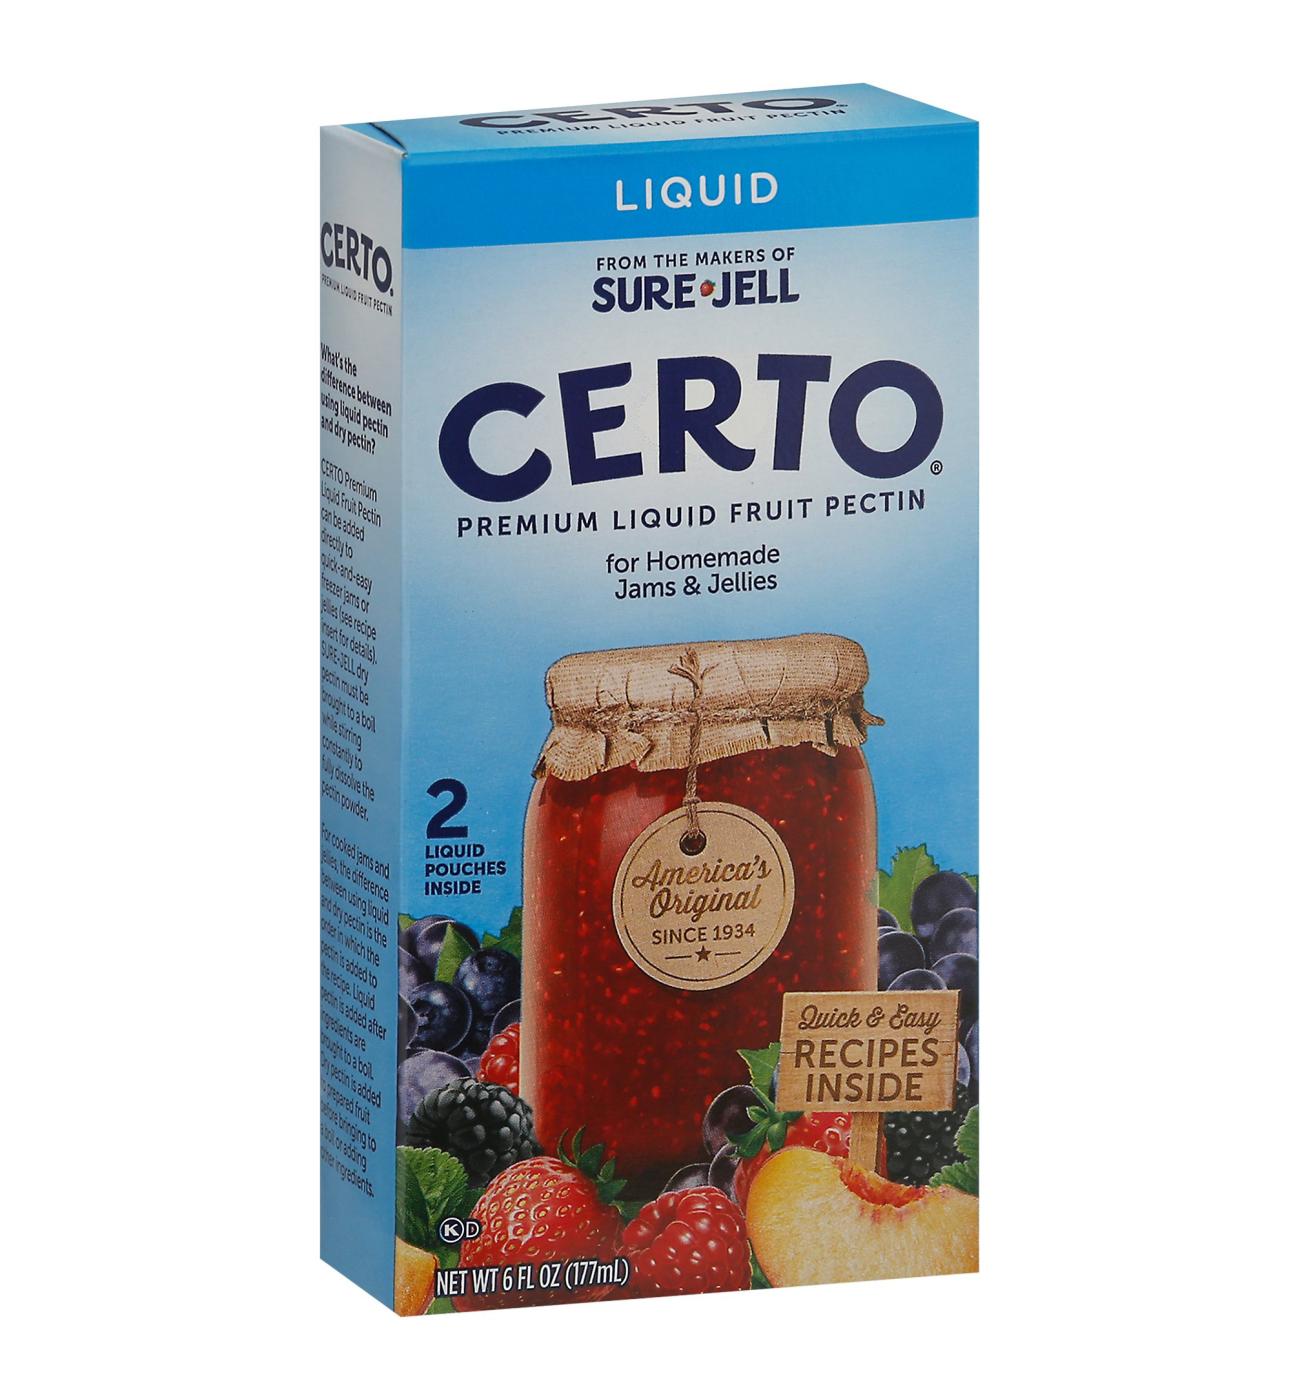 Certo Premium Fruit Pectin Box-Liquid; image 2 of 2